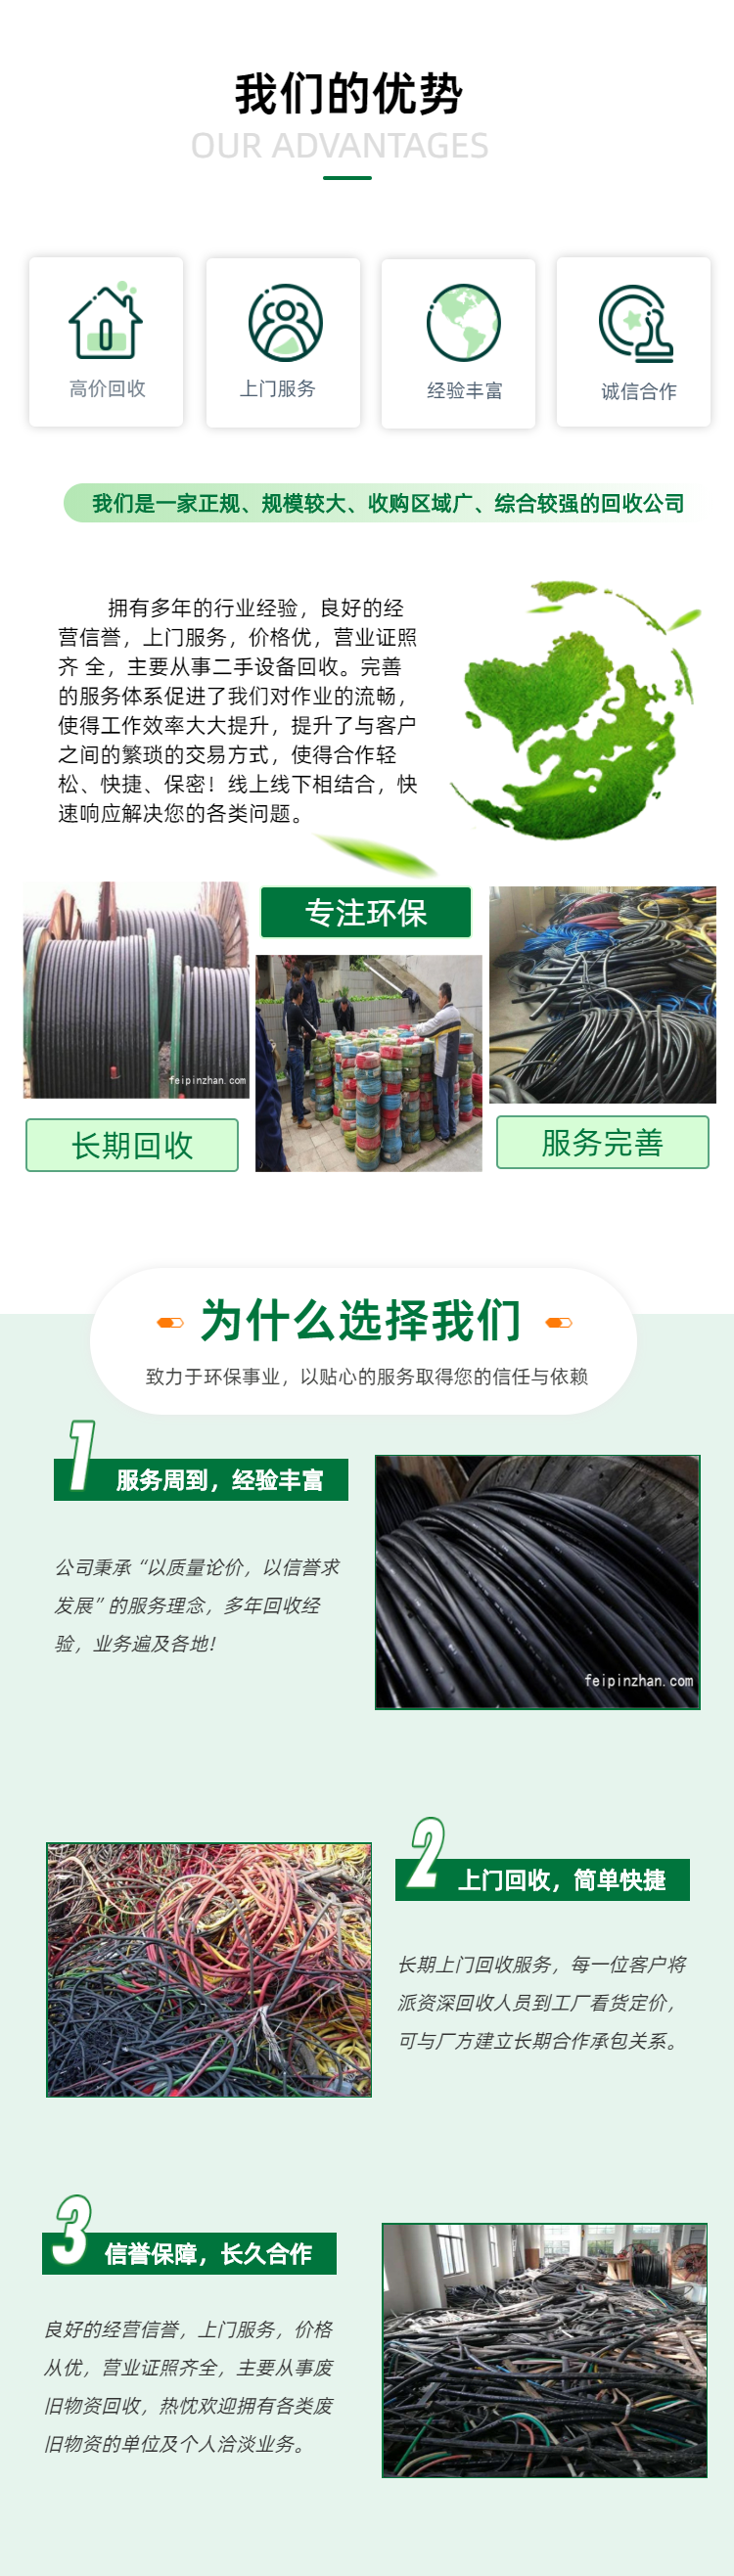 上海工程剩余电缆线回收 电力电缆回收